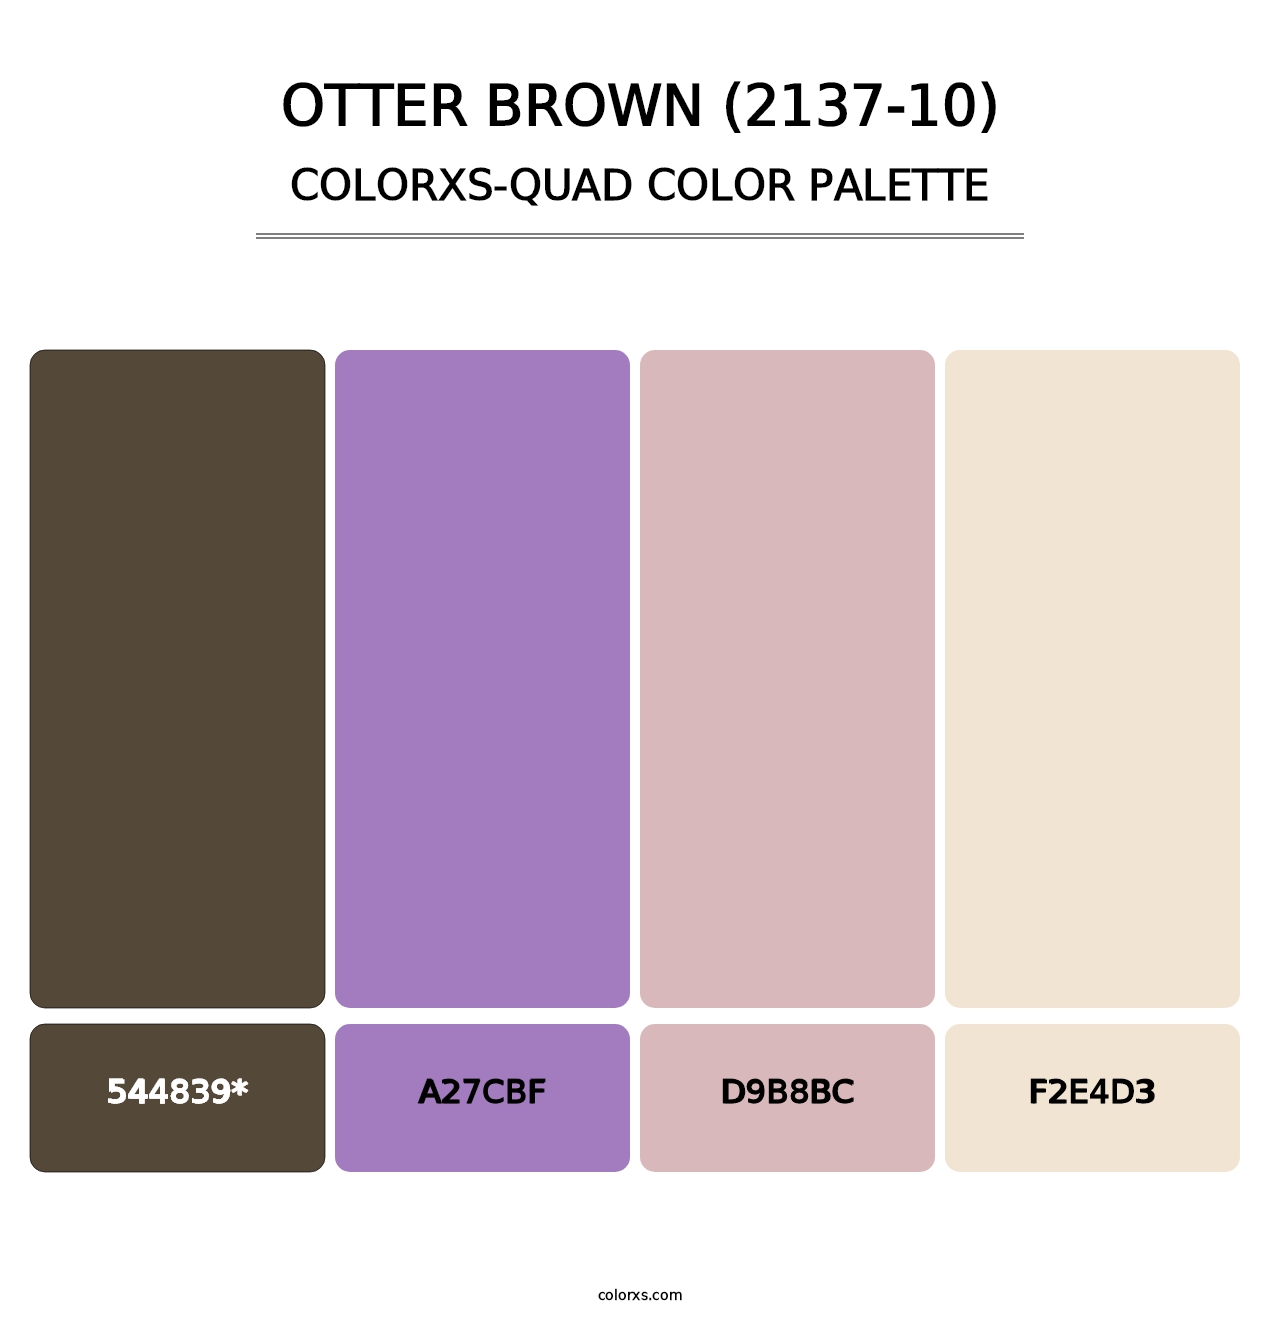 Otter Brown (2137-10) - Colorxs Quad Palette